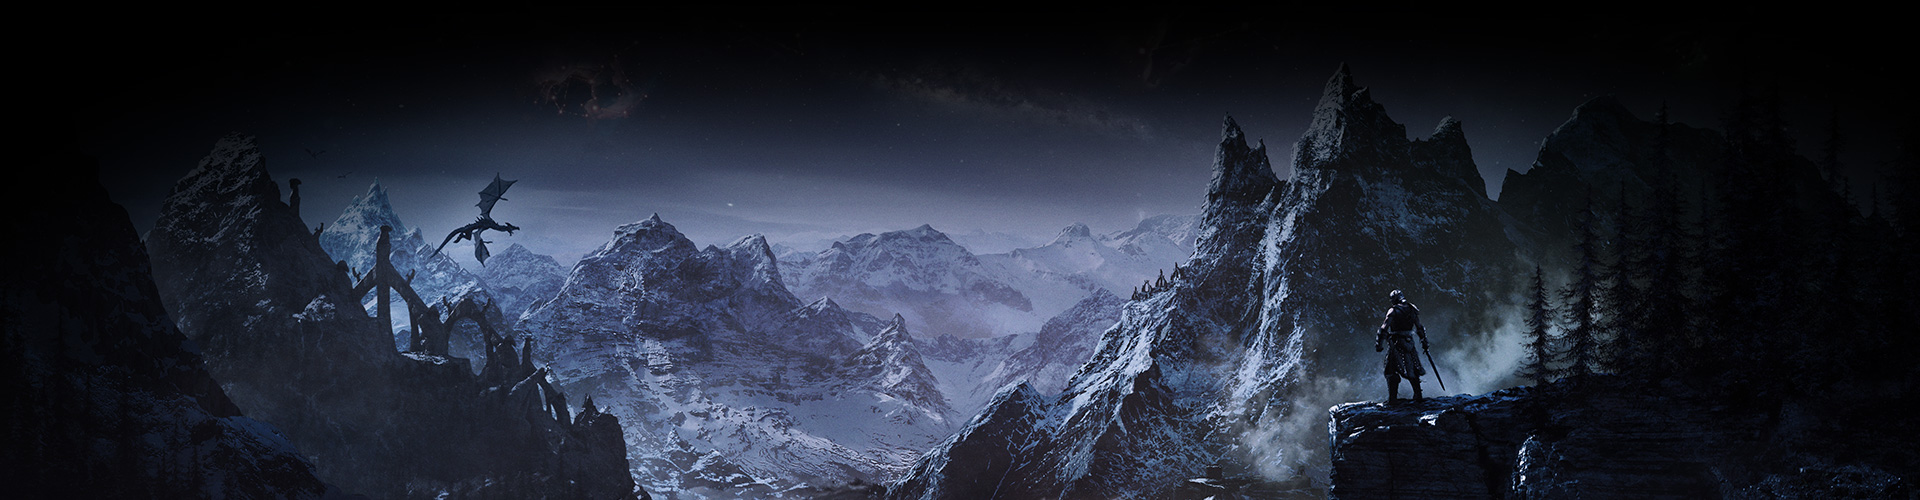 En karaktär ser ut över en dalgång mellan snötäckta berg medan en drake svävar ovanför